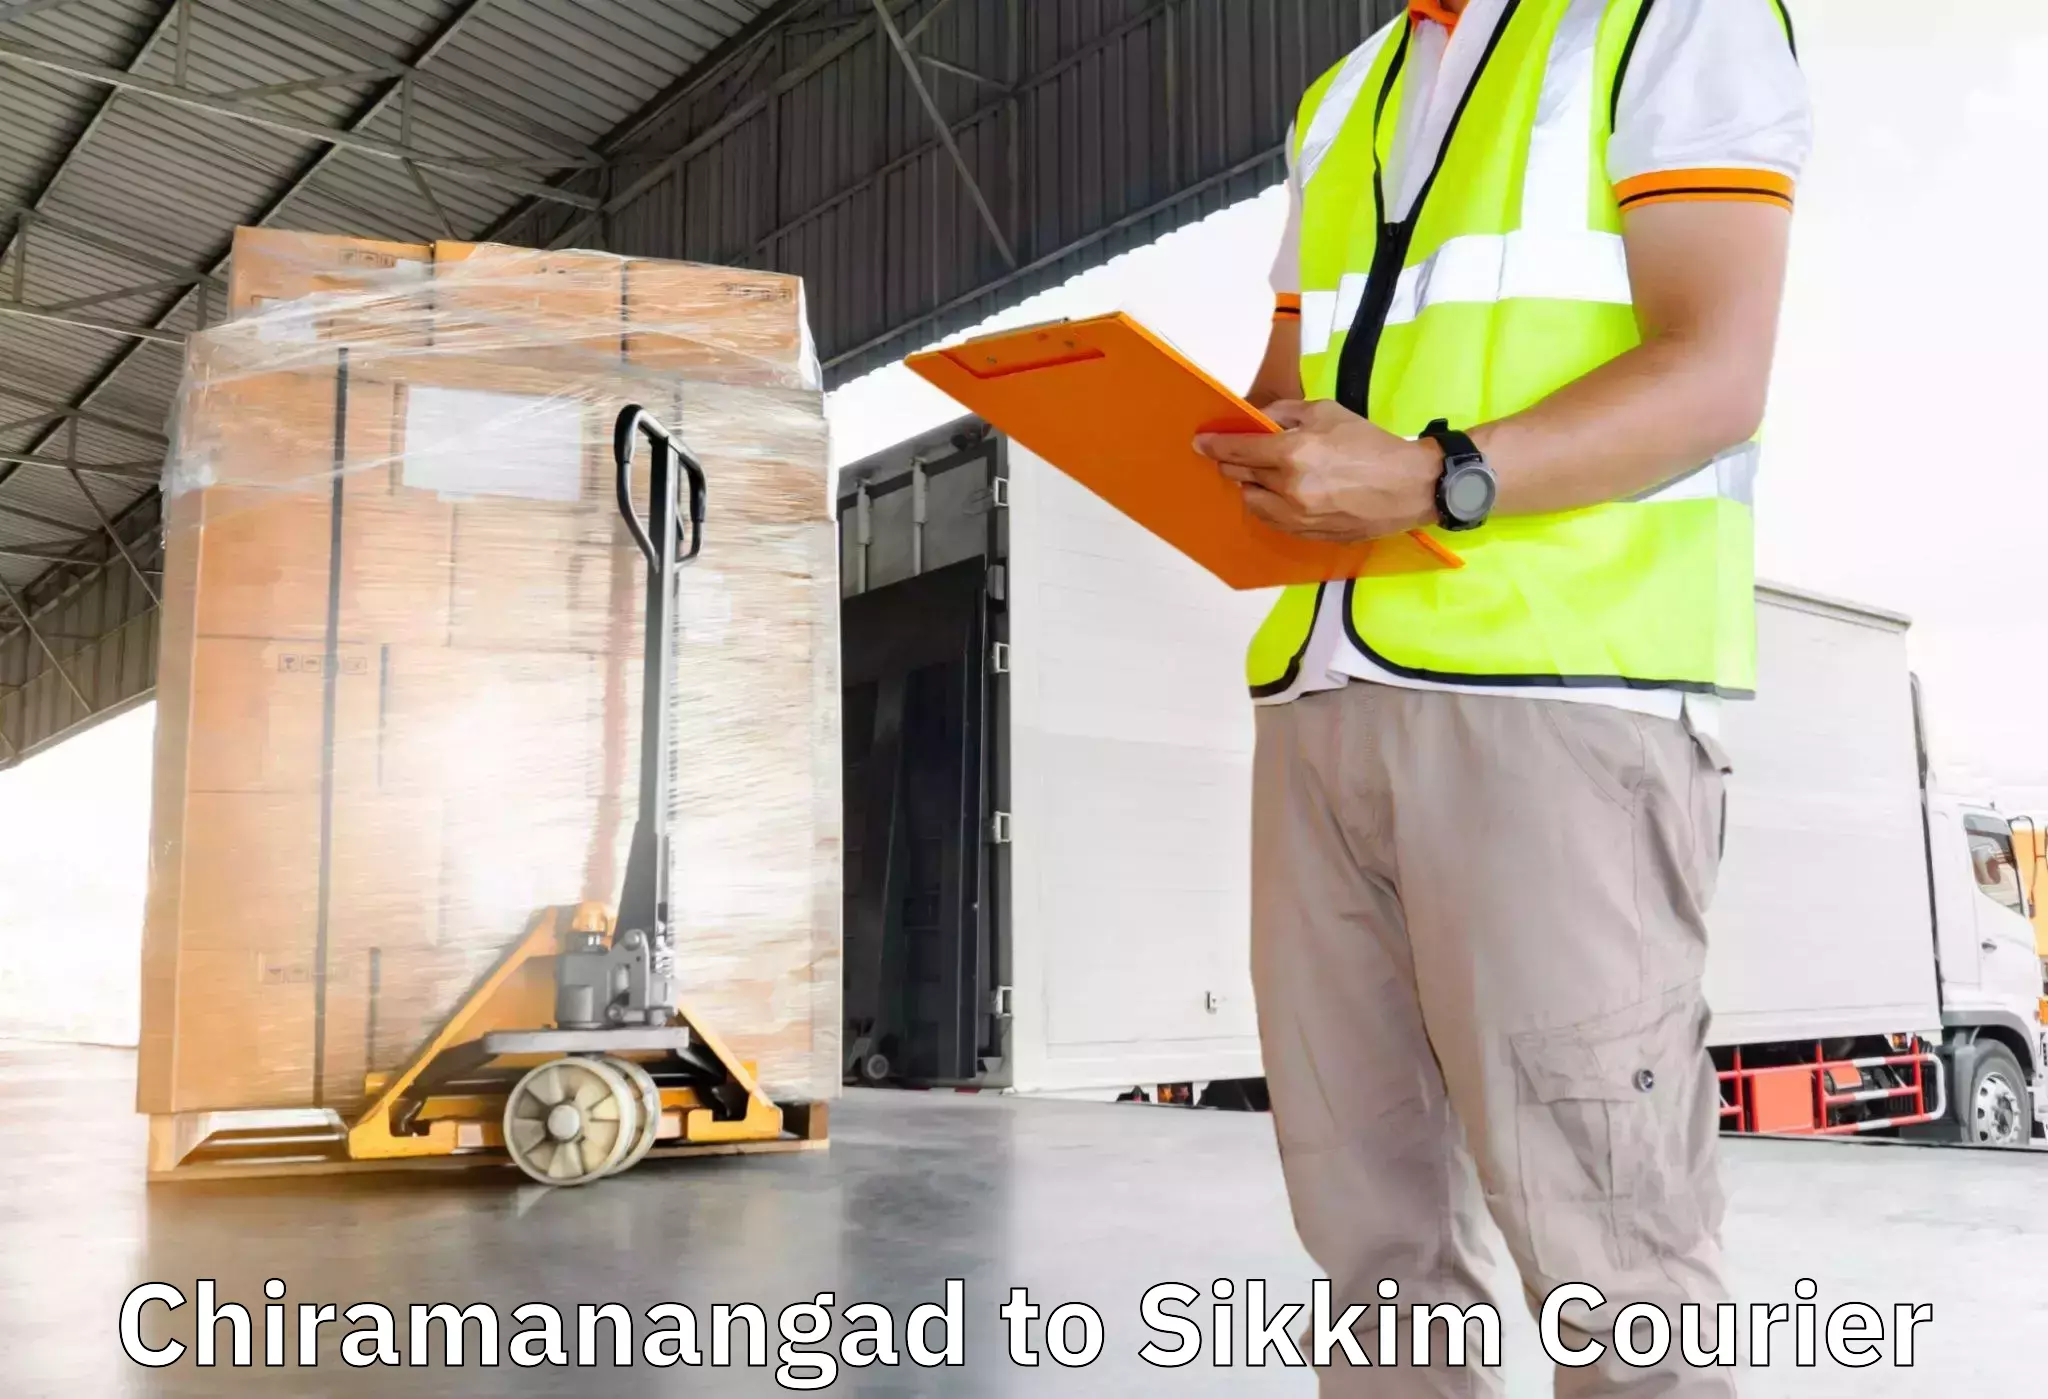 Household goods transporters Chiramanangad to Sikkim